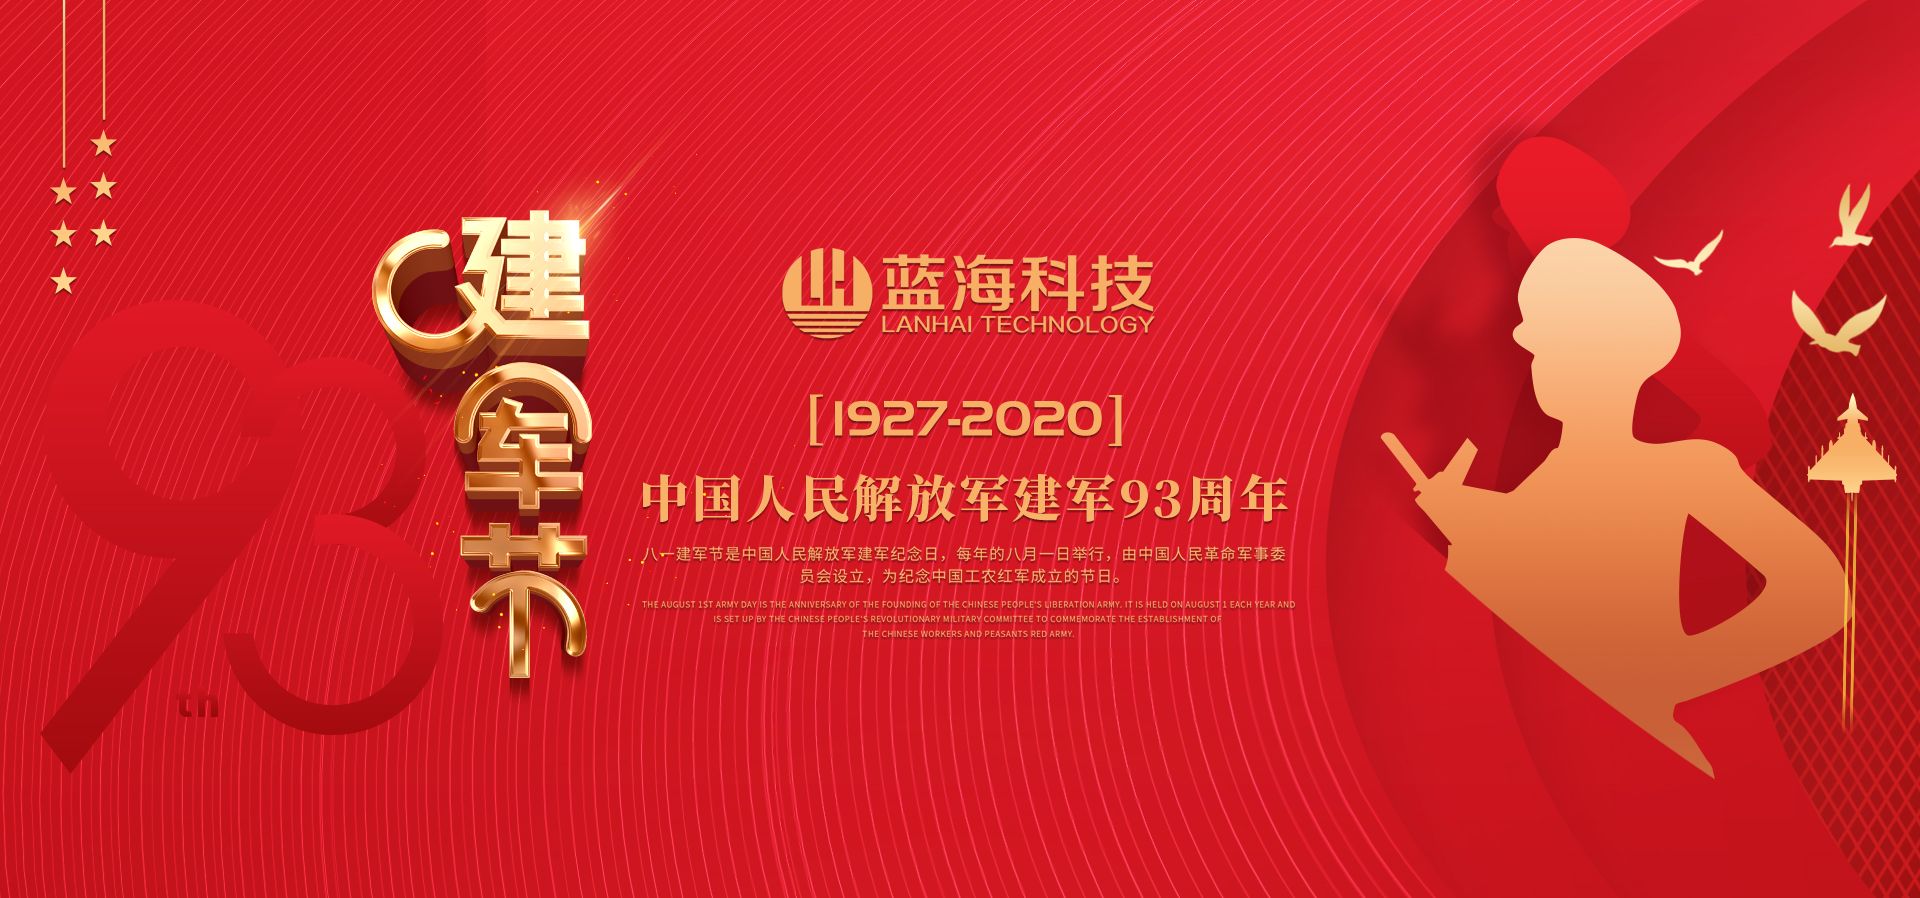 藍海環境科技--熱烈祝賀中國人民解放軍成立93周年